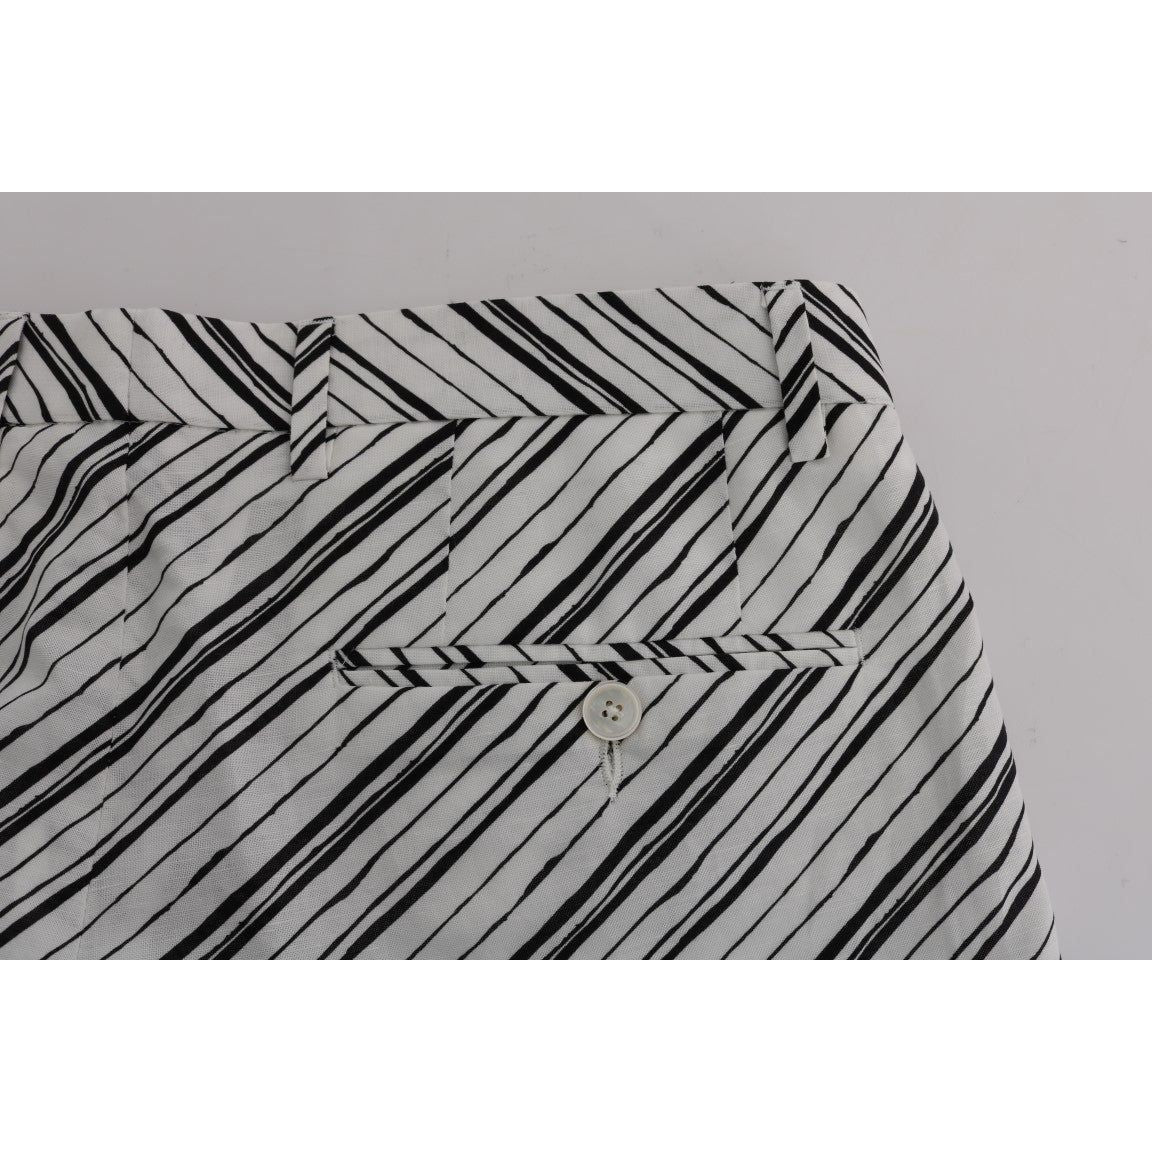 Dolce & GabbanaElegant Striped Cotton-Linen ShortsMcRichard Designer Brands£229.00